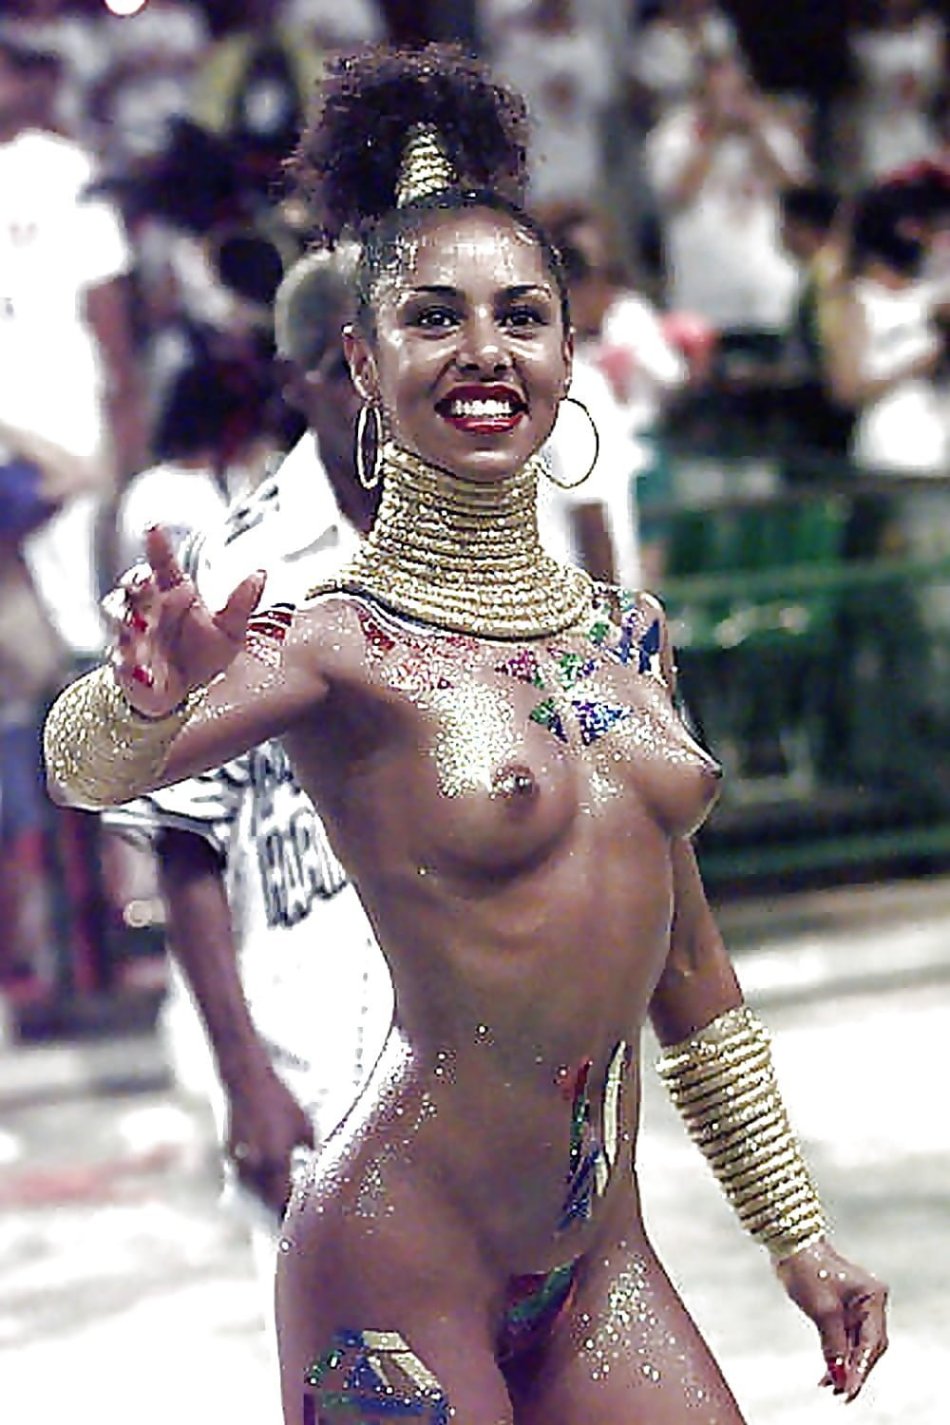 порно фото голый карнавал